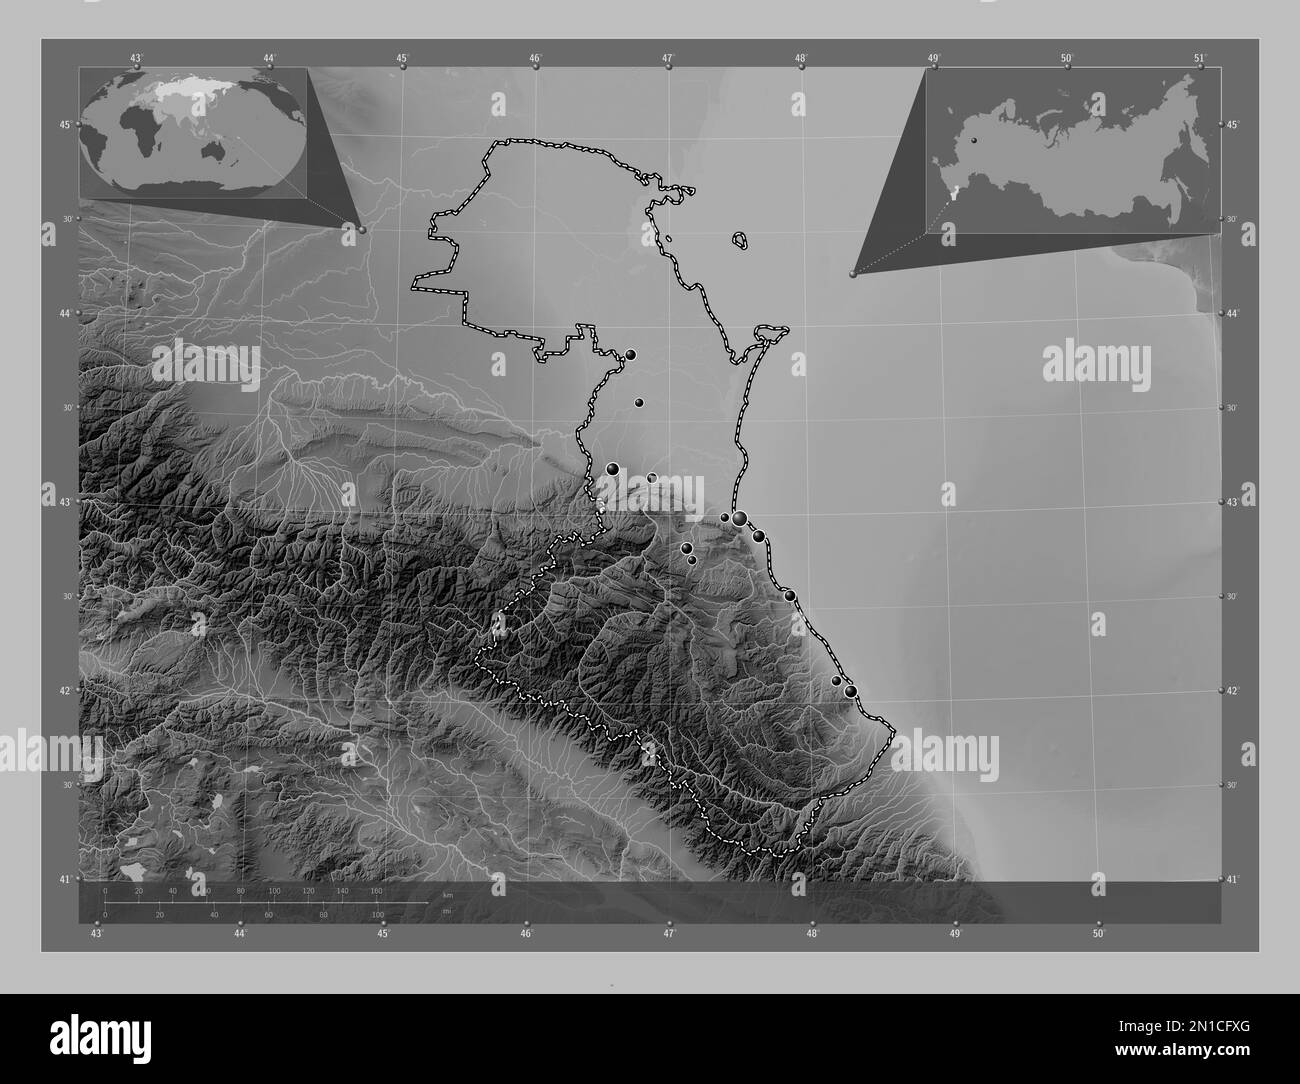 Dagestan, repubblica di Russia. Mappa in scala di grigi con laghi e fiumi. Posizioni delle principali città della regione. Mappe delle posizioni ausiliarie degli angoli Foto Stock